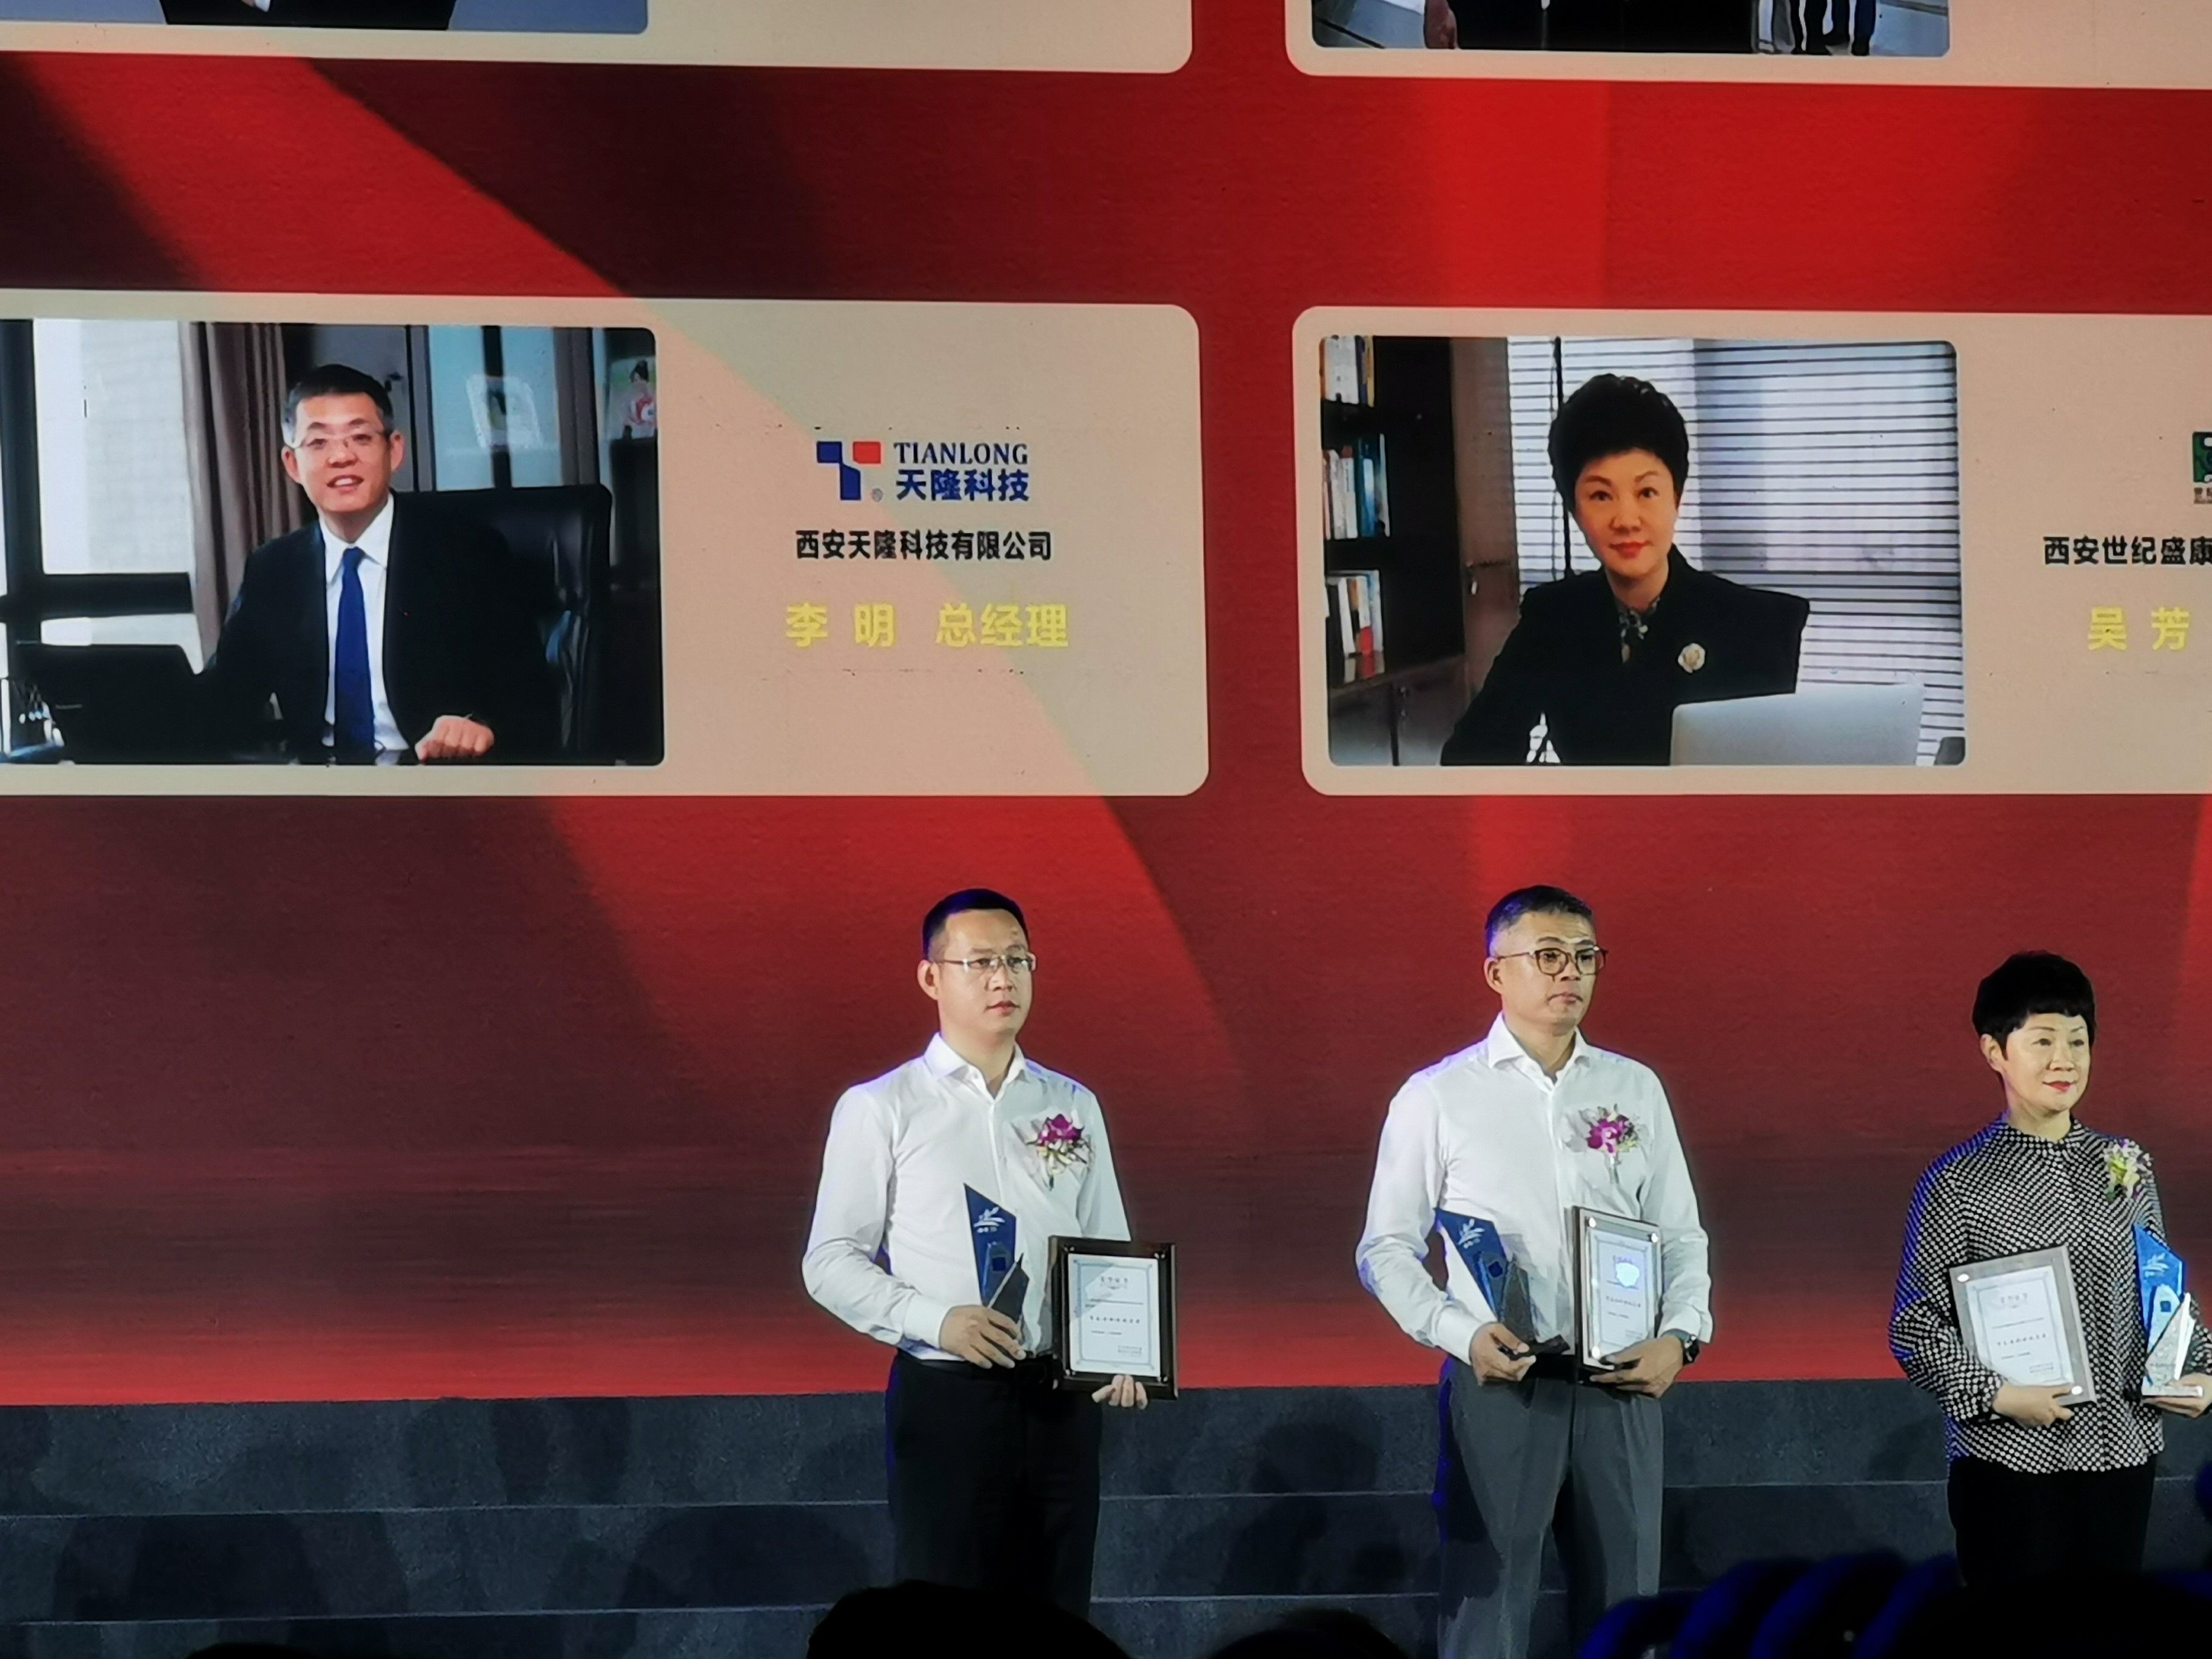 【喜讯】西安“市长特别奖” 提名奖｜天隆科技总经理李明先生喜获殊荣